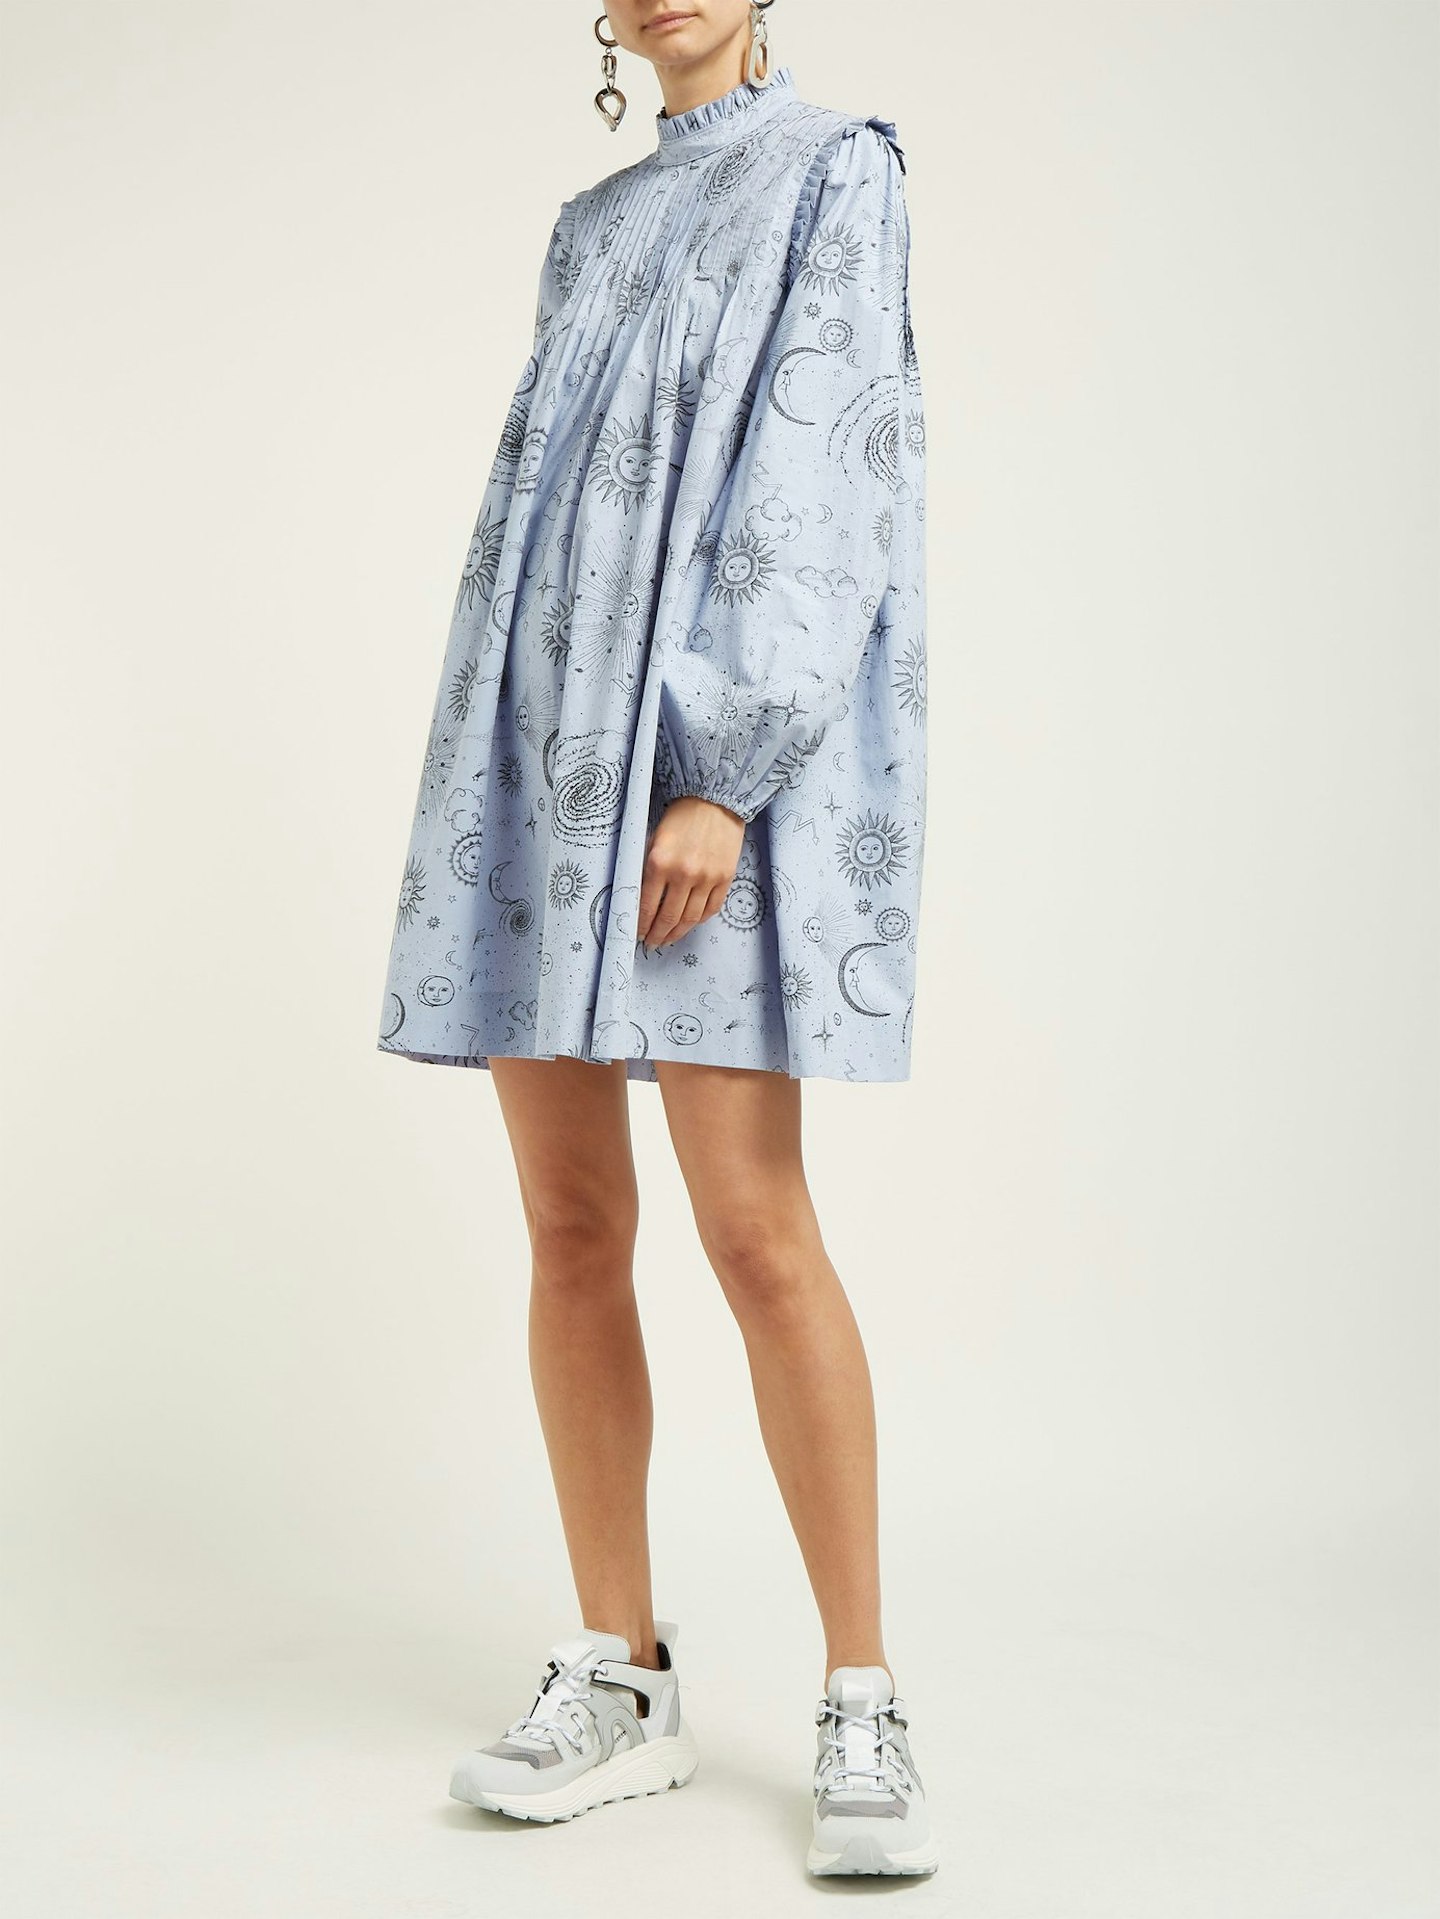 Ganni, Moon Print Poplin Dress, £215